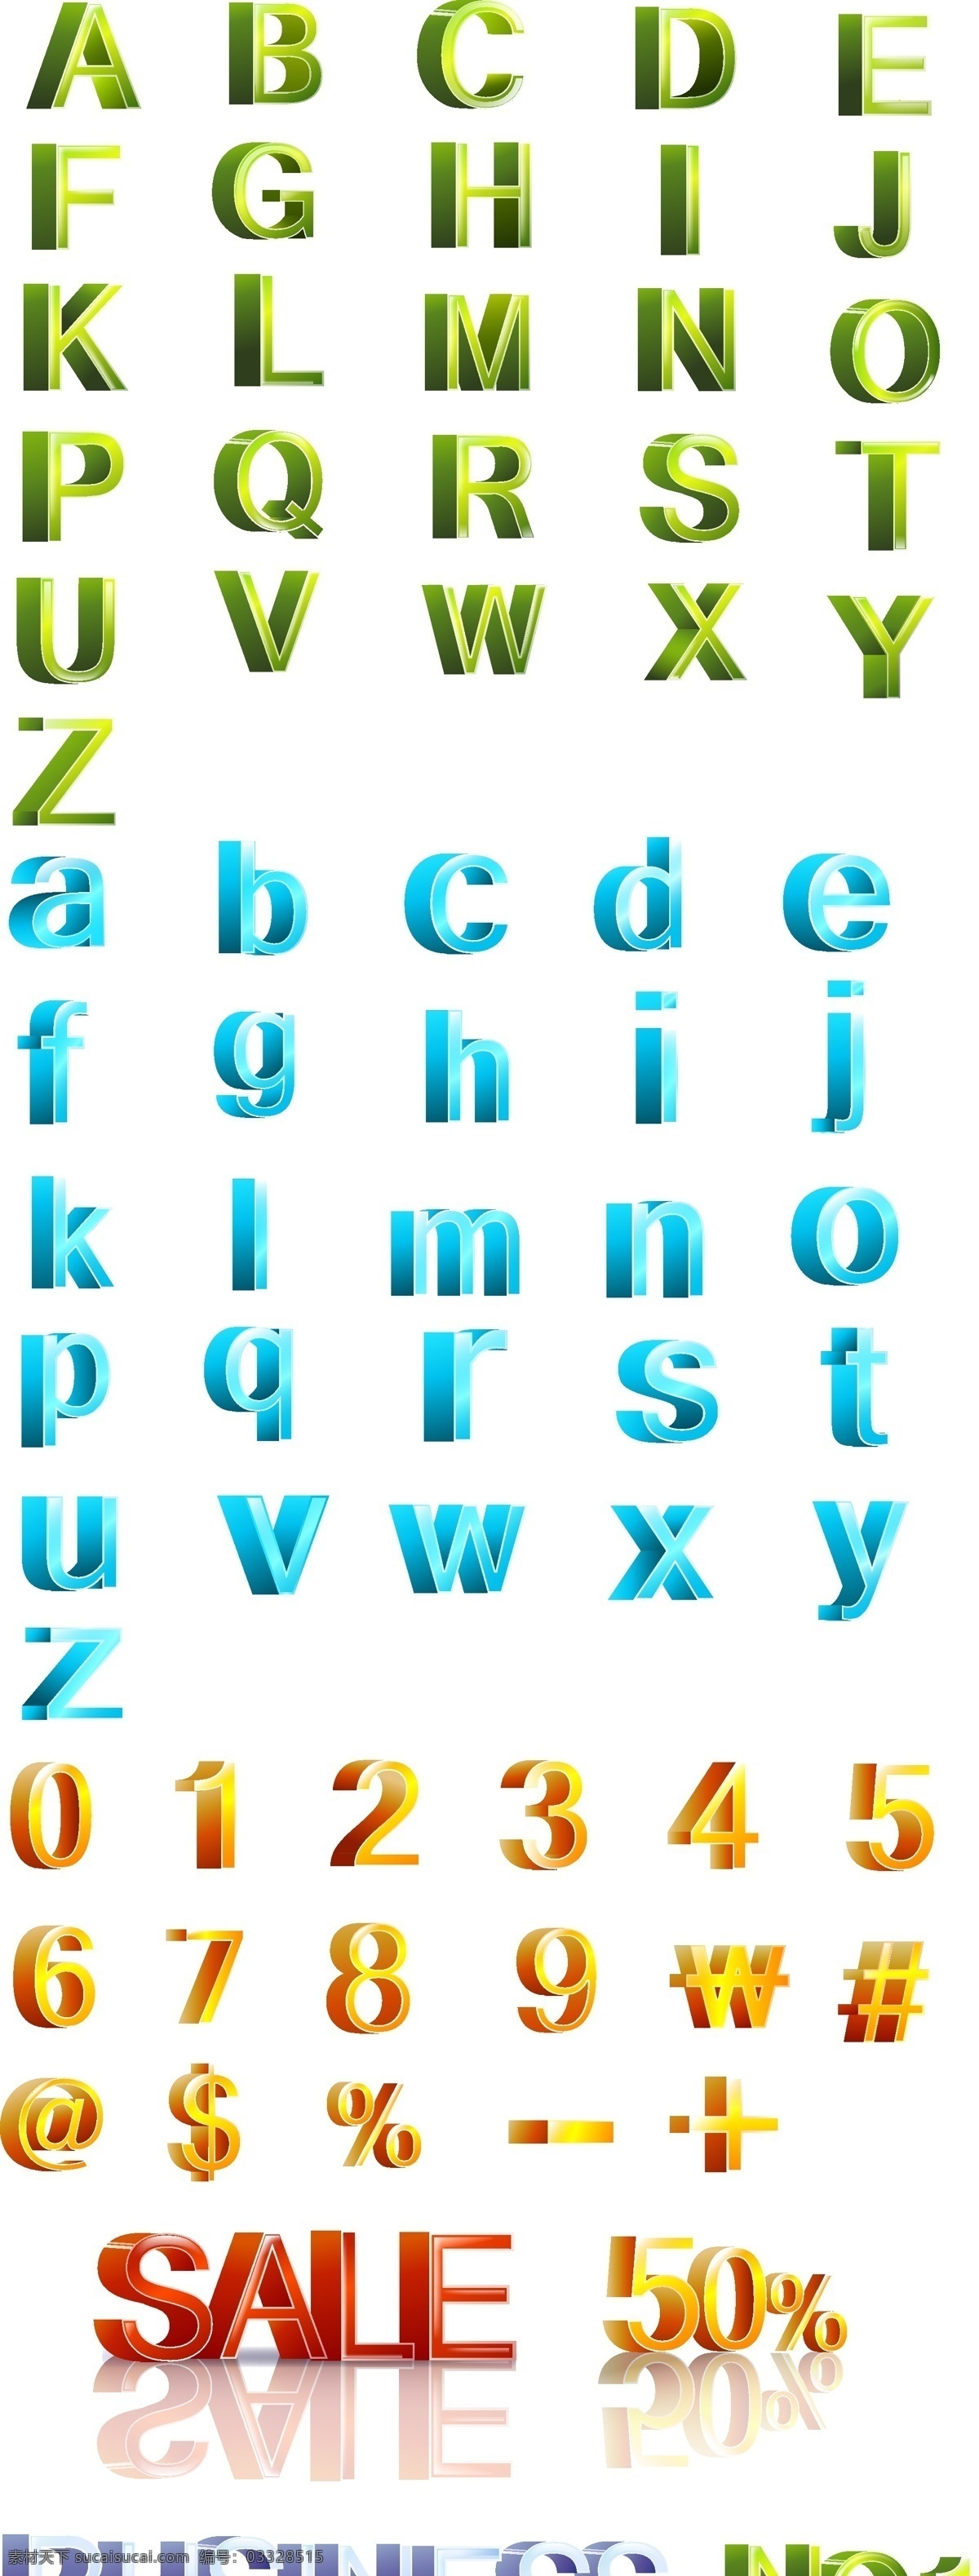 三维 向量 字母 数字 修订版 三维的字母 字母和数字 数字的修订 修订 版 彩色 立体 矢量 字母数字三维 矢量图 其他矢量图